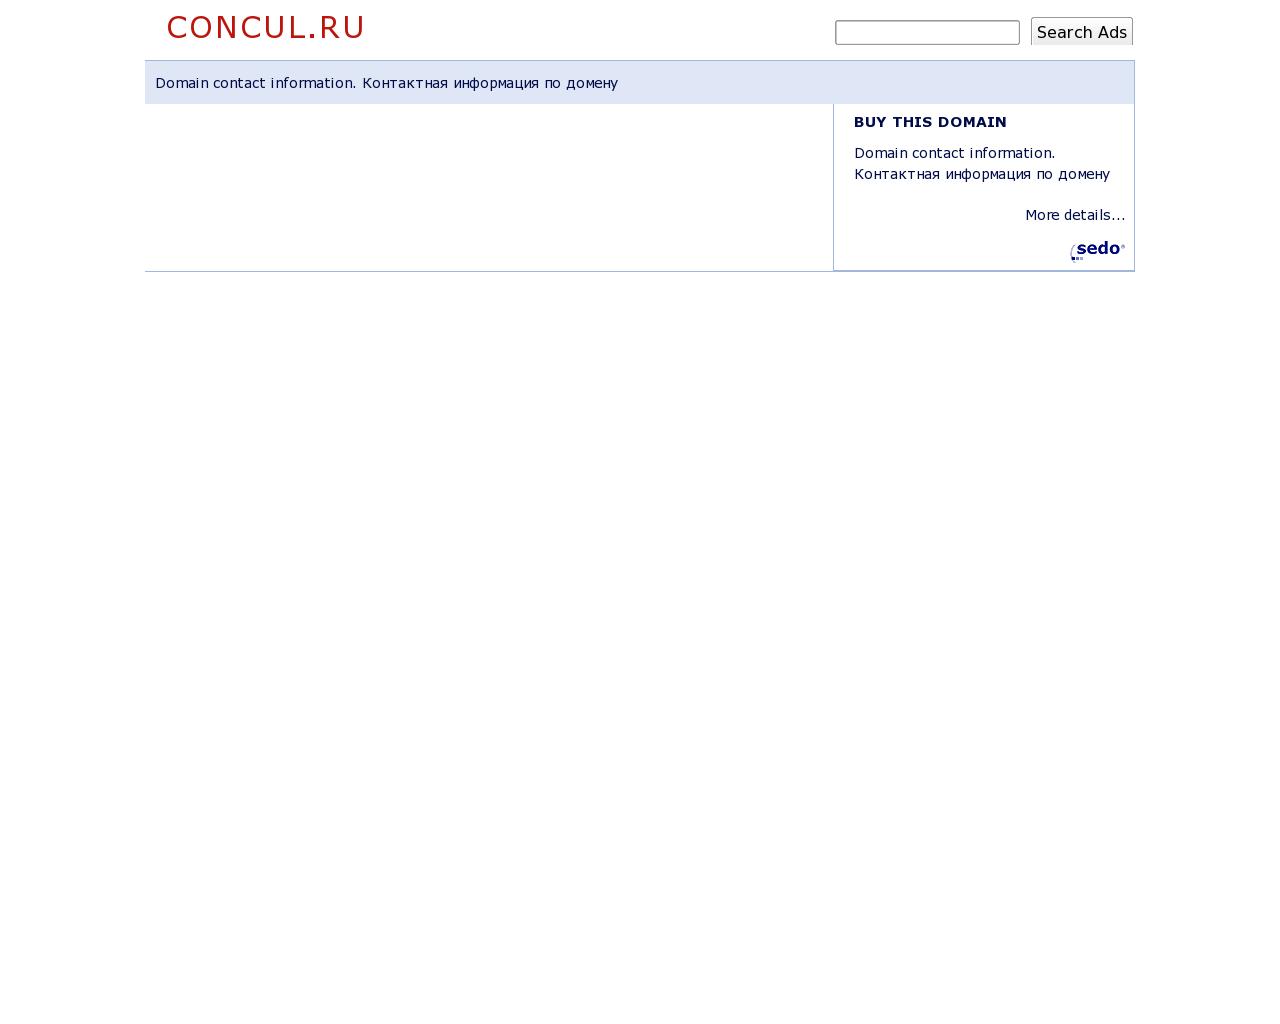 Изображение сайта concul.ru в разрешении 1280x1024